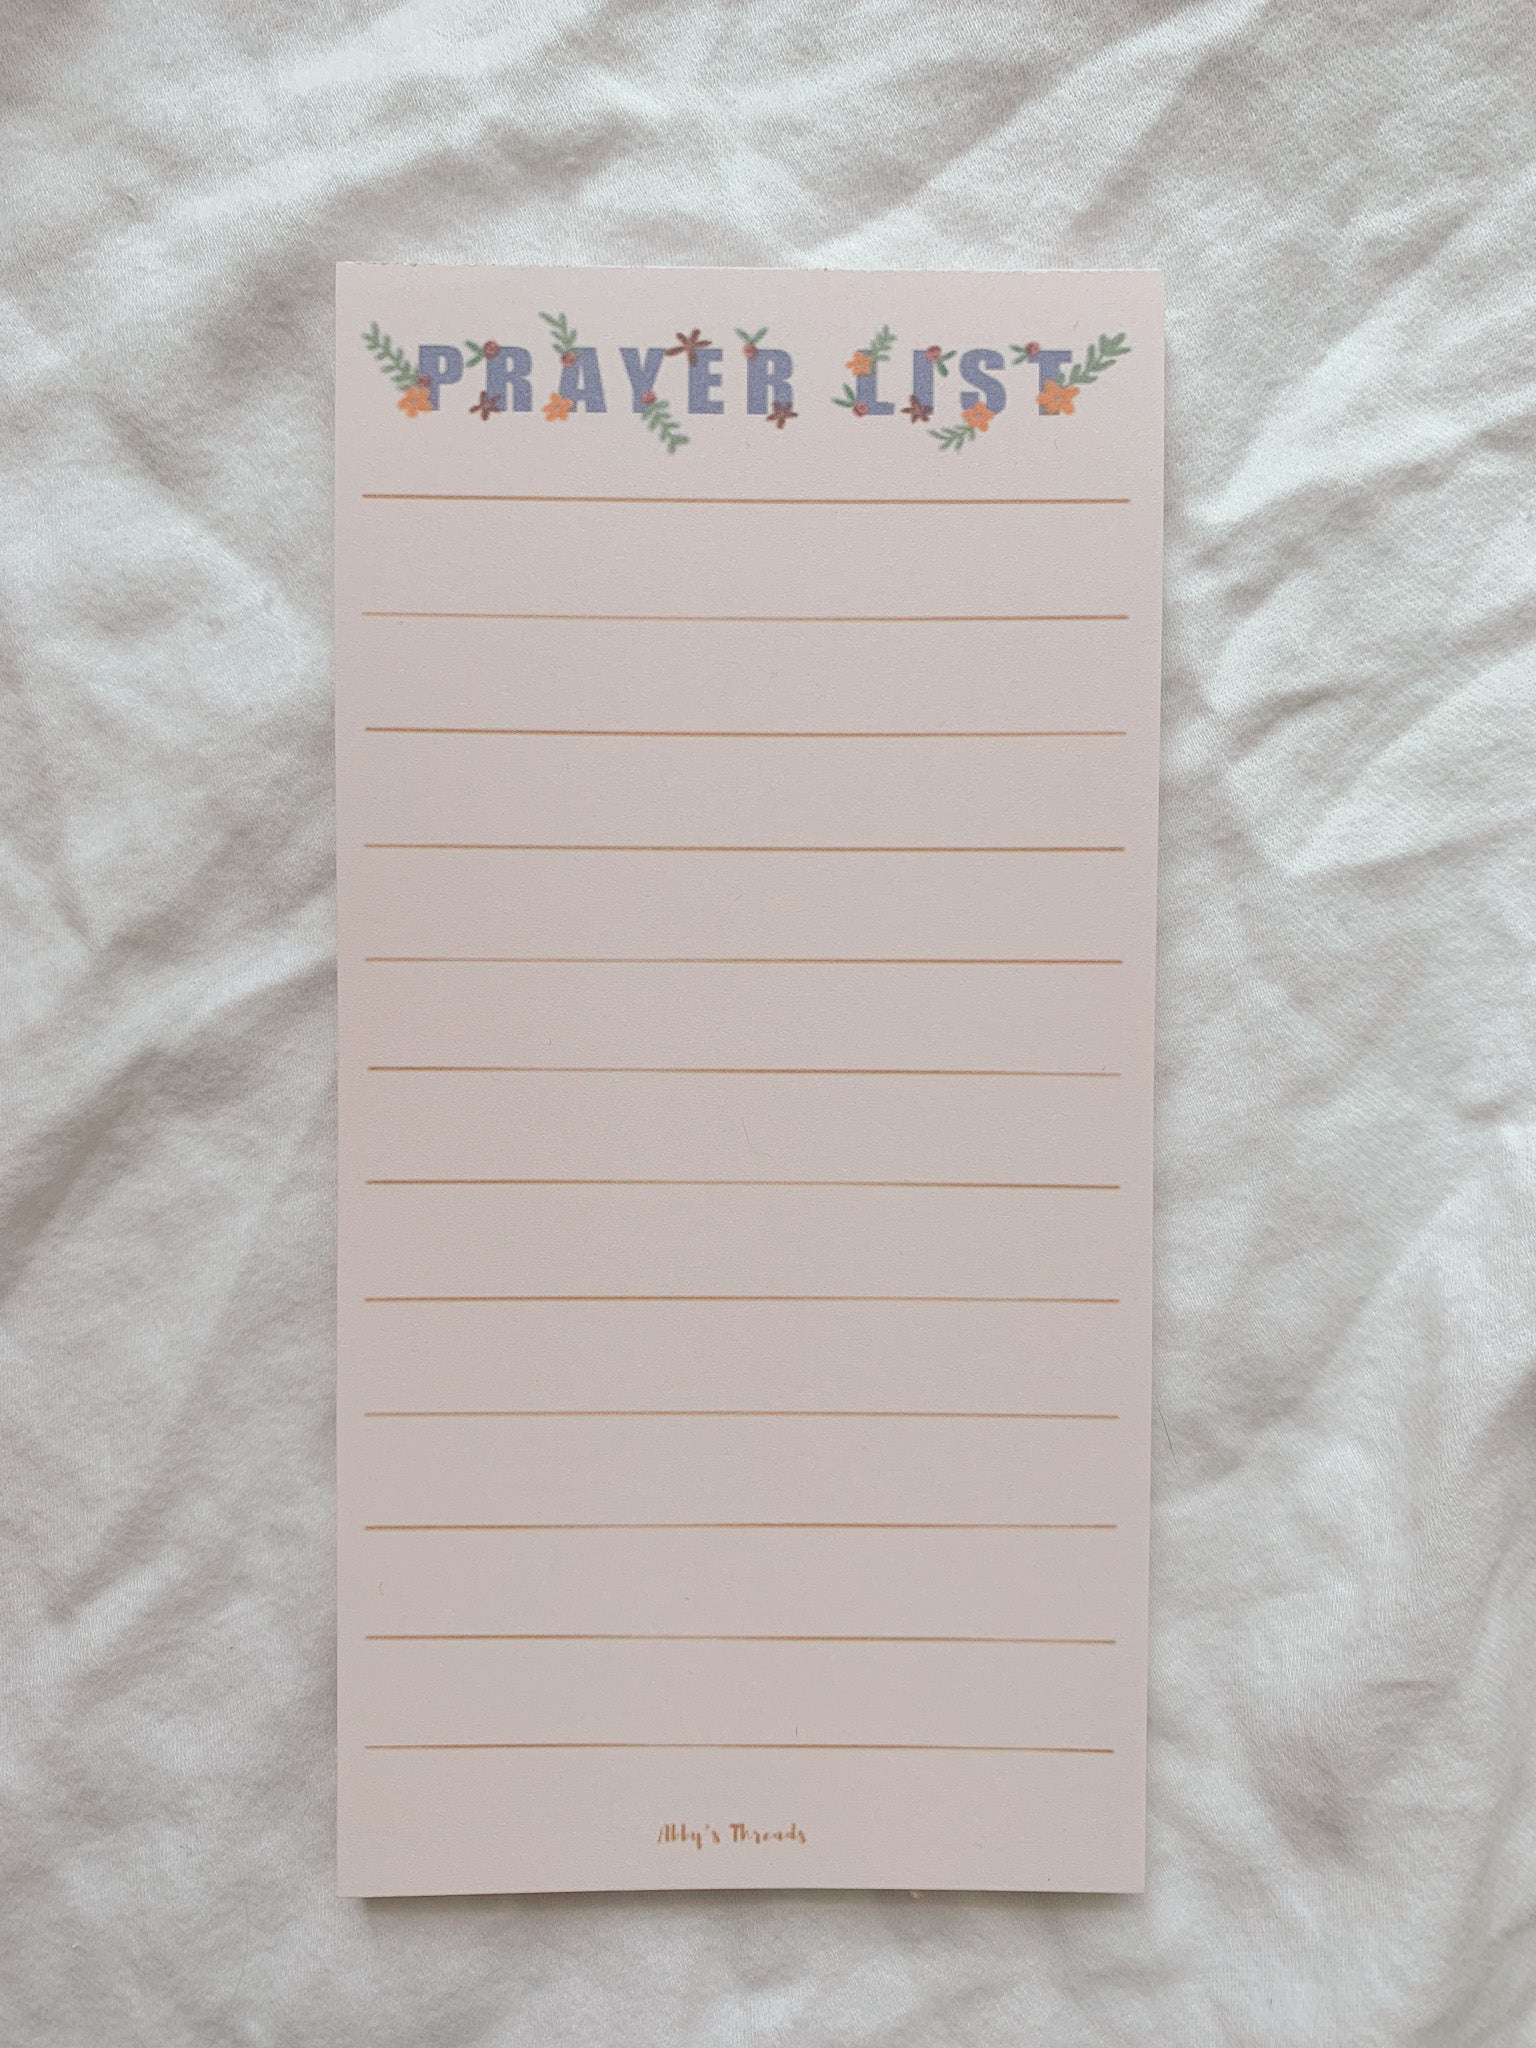 The Prayer List Notepad - Abby’s Threads